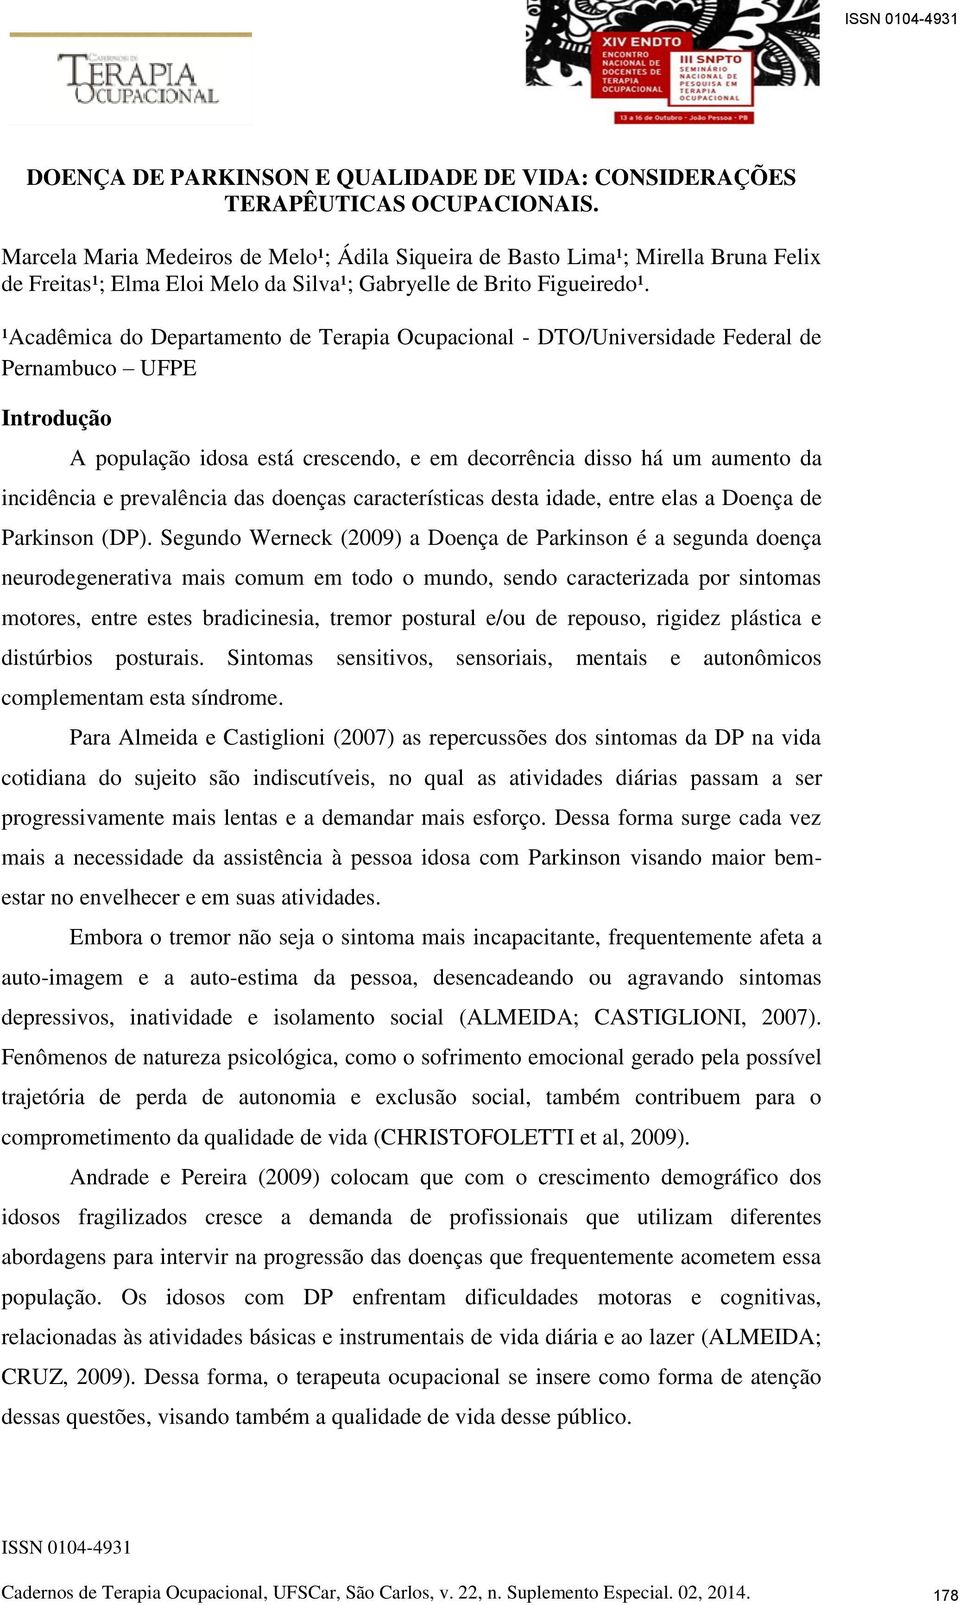 ¹Acadêmica do Departamento de Terapia Ocupacional - DTO/Universidade Federal de Pernambuco UFPE Introdução A população idosa está crescendo, e em decorrência disso há um aumento da incidência e